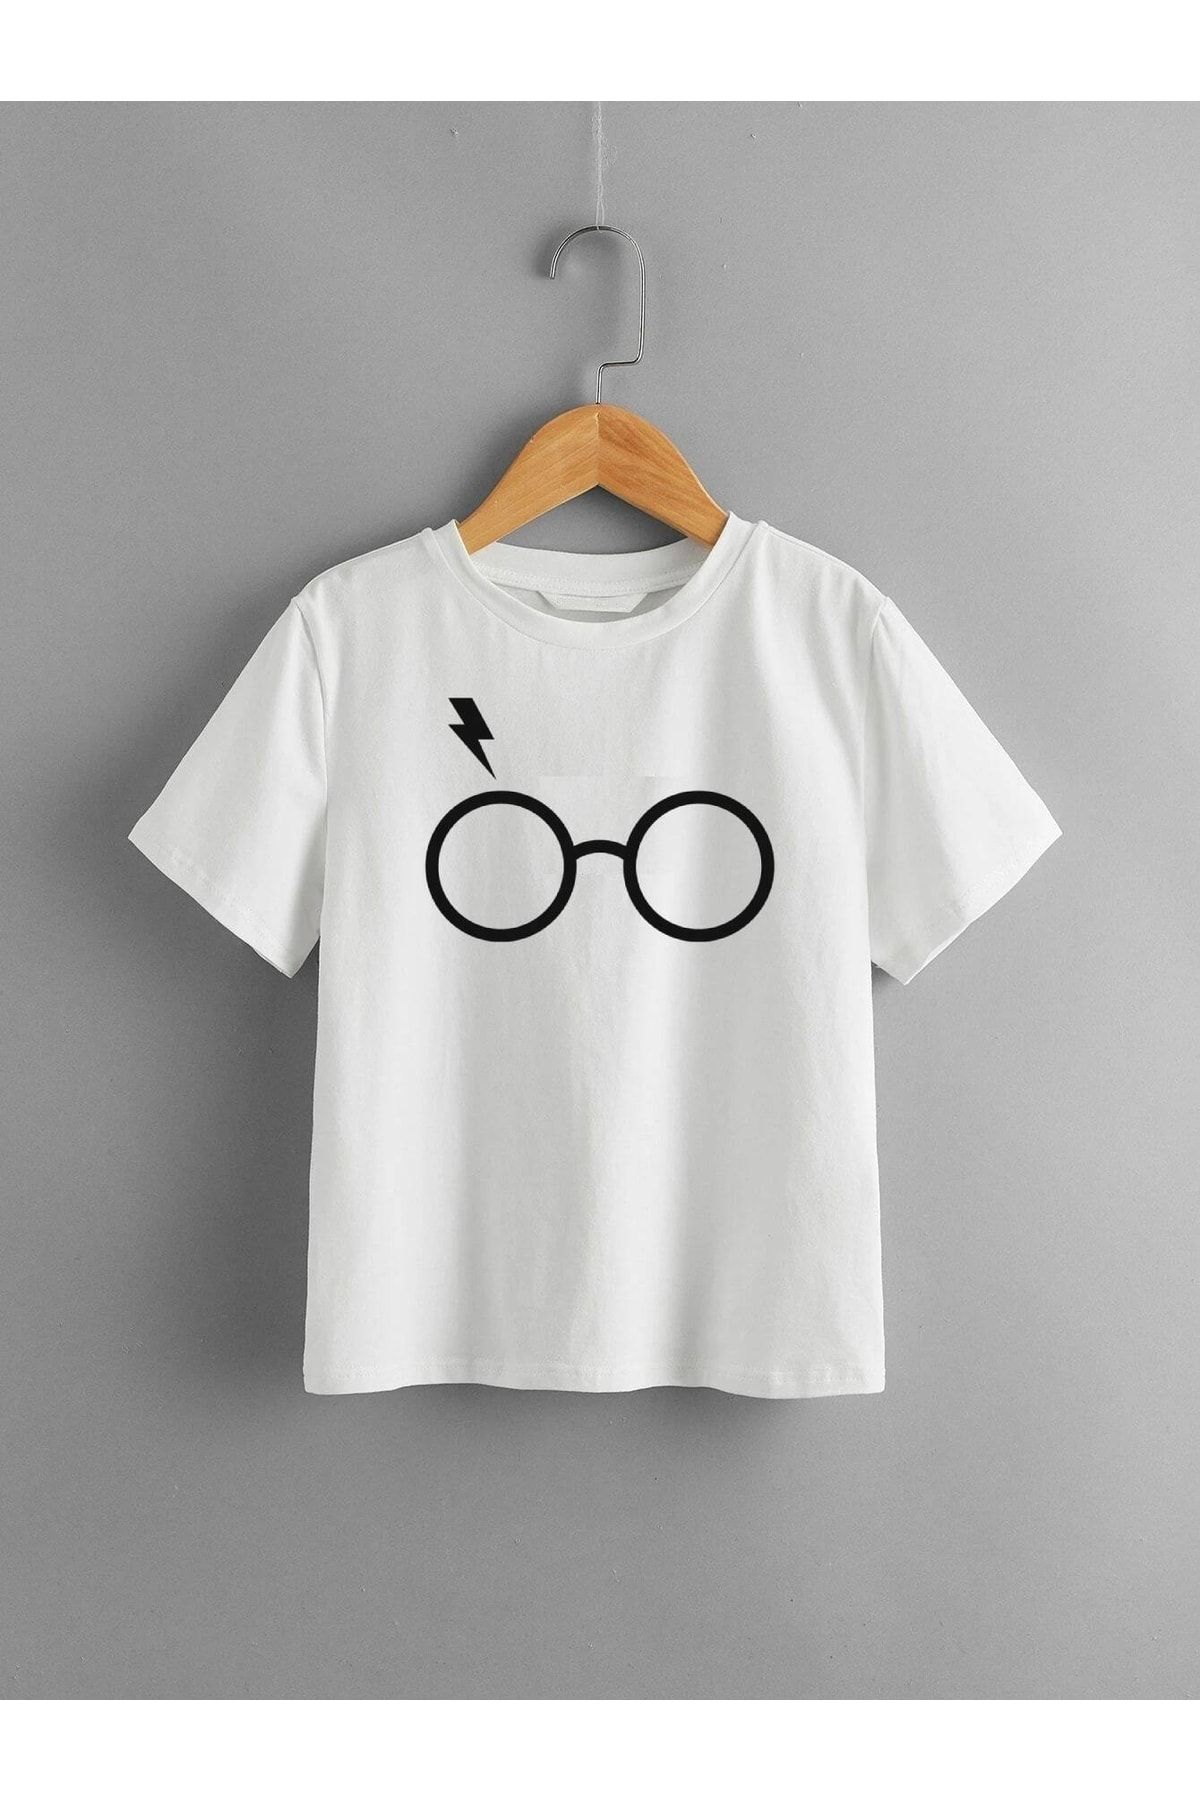 LePold Harry Potter Baskılı Kız/erkek Çocuk Tişört